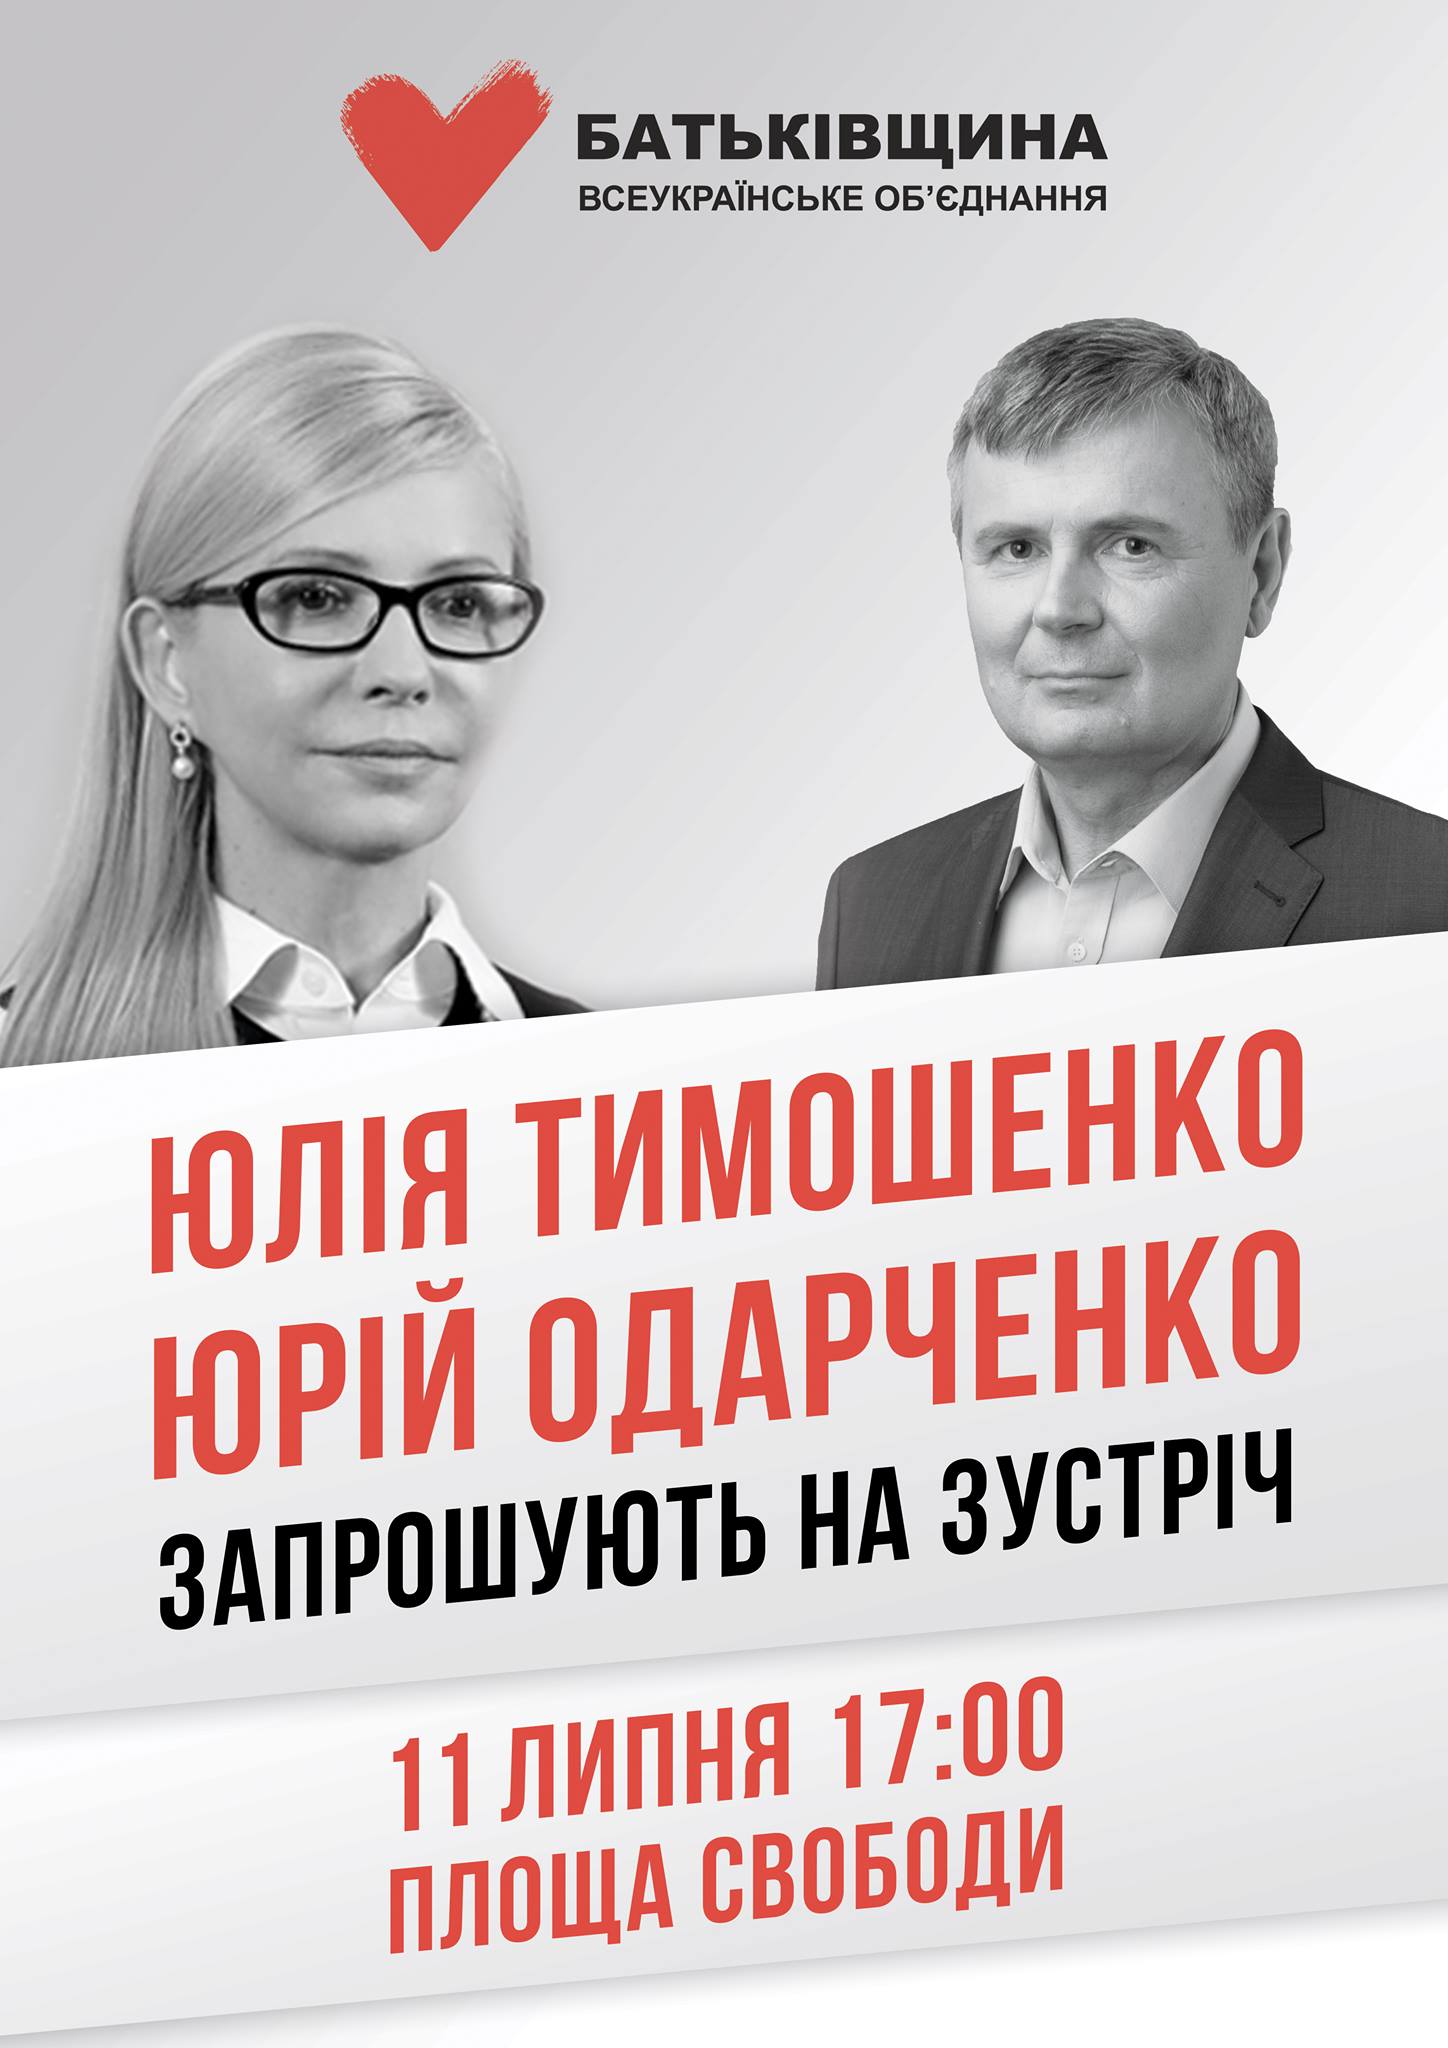 Юлия Тимошенко встретится с жителями Херсона и Станислава уже в понедельник